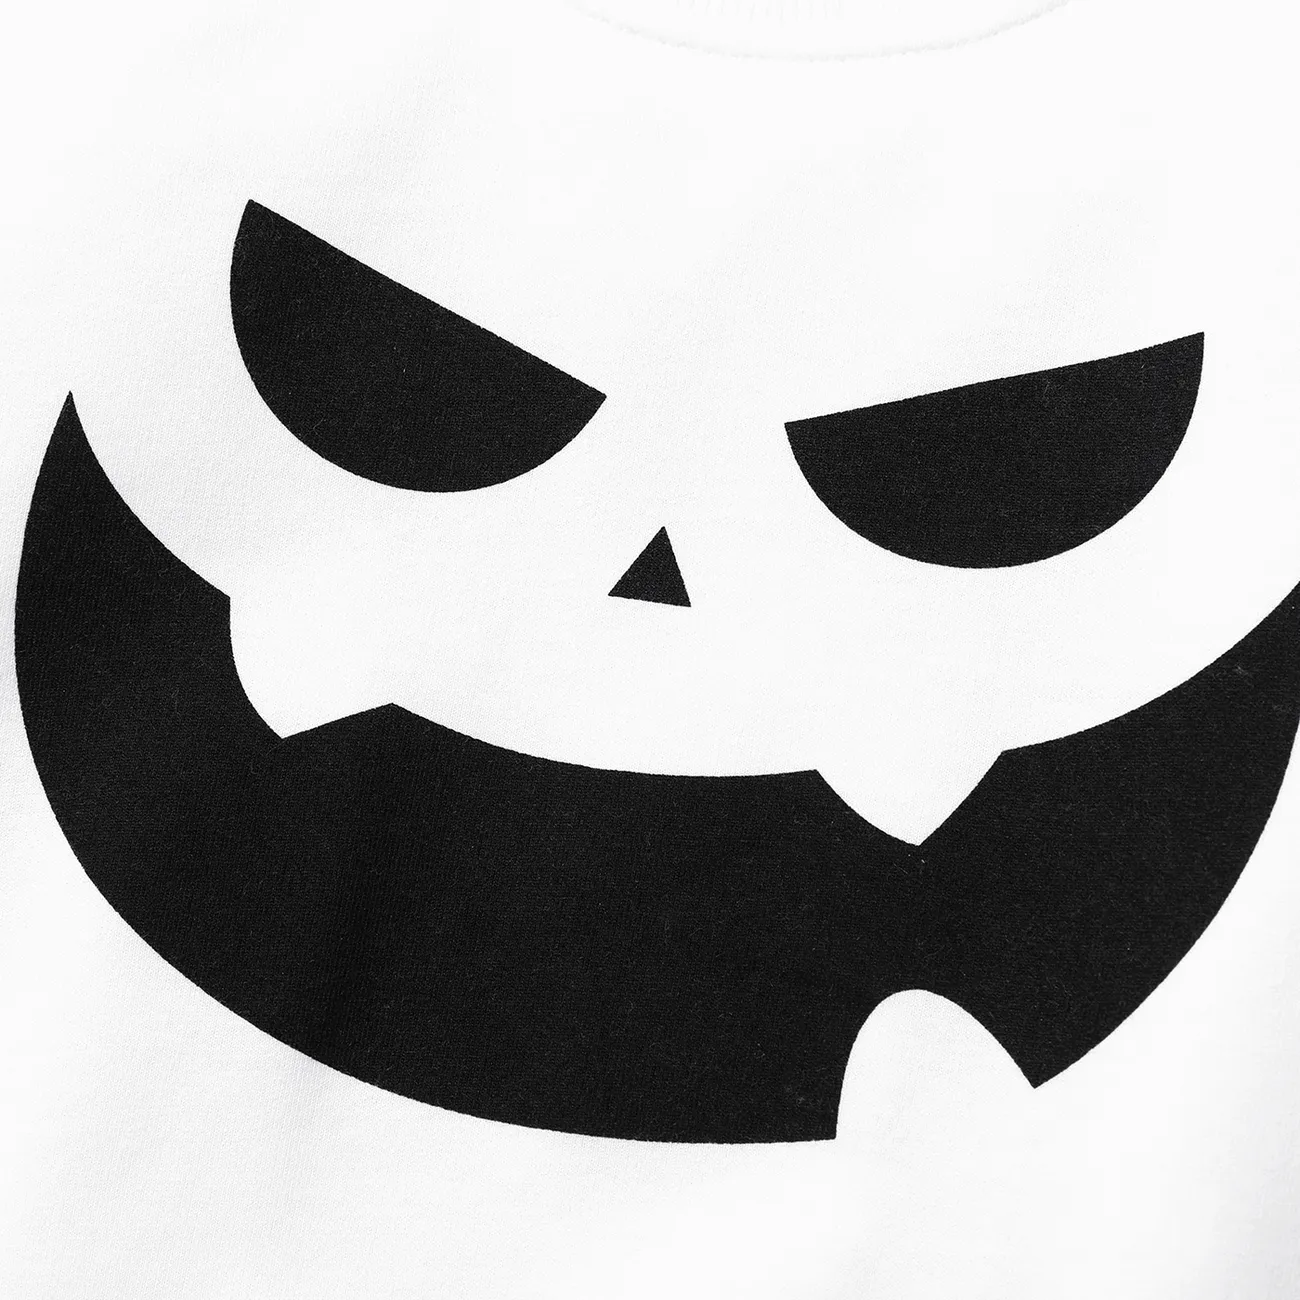 Toddler Girl/Boy Halloween Pattern Sweatshirt White big image 1